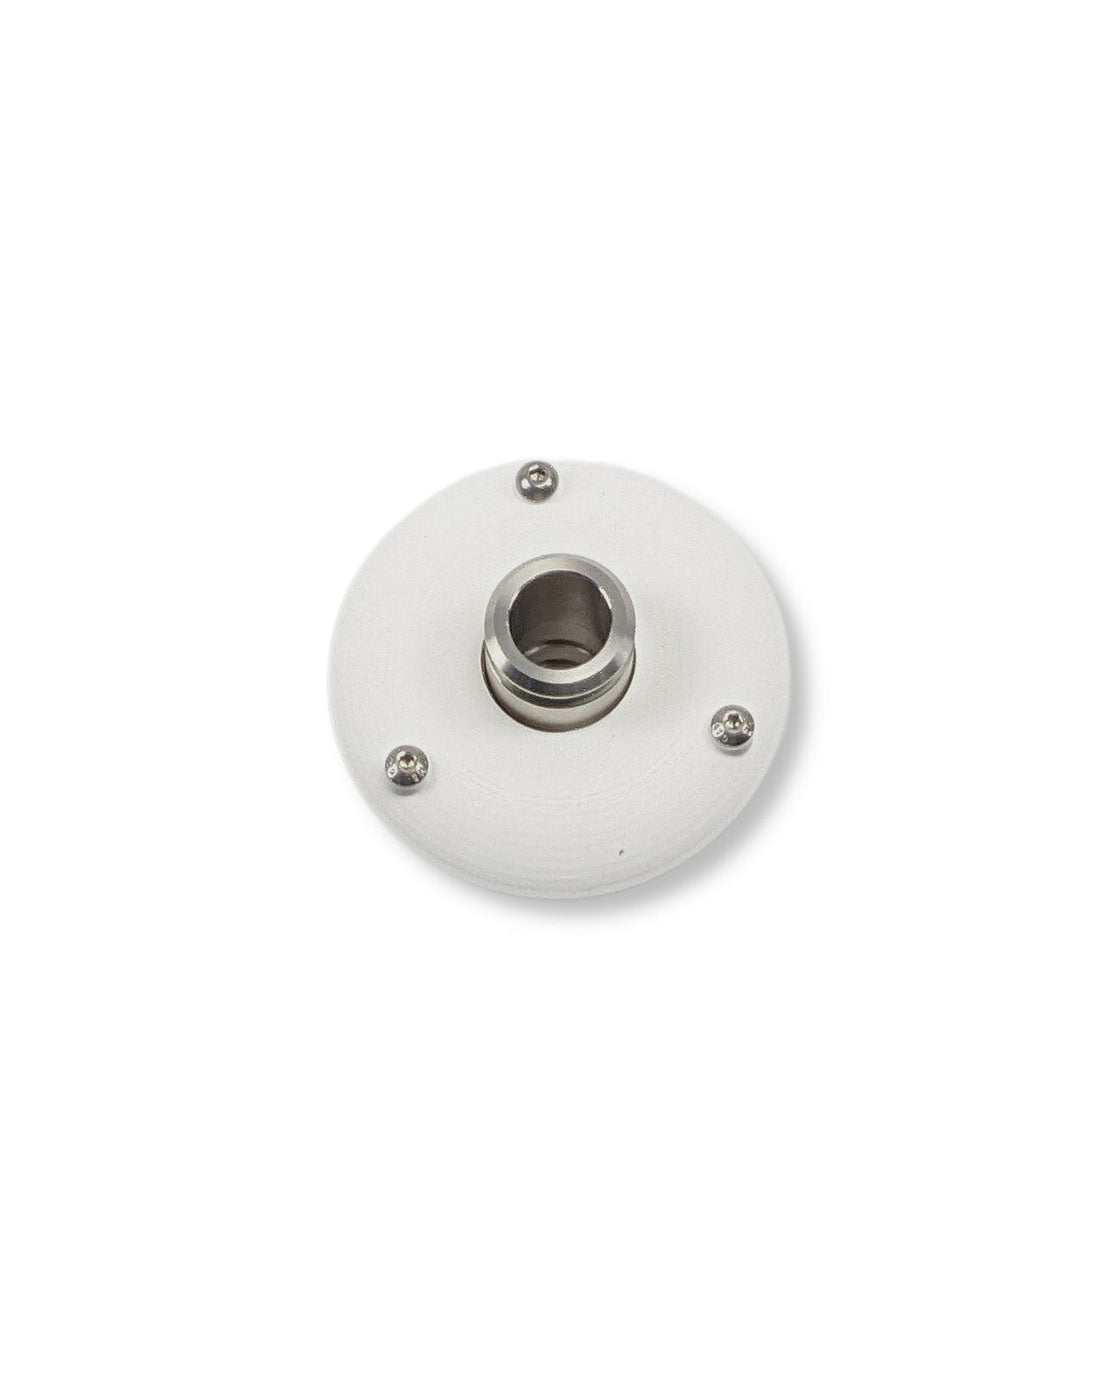 Ein weißer runder Knopf auf einer weißen Oberfläche sorgt für Trinkwasserqualität mit dem PURION IBC Universal 17W SPL BS OTC 12V/24V Tank-Set von UV Concept GmbH.